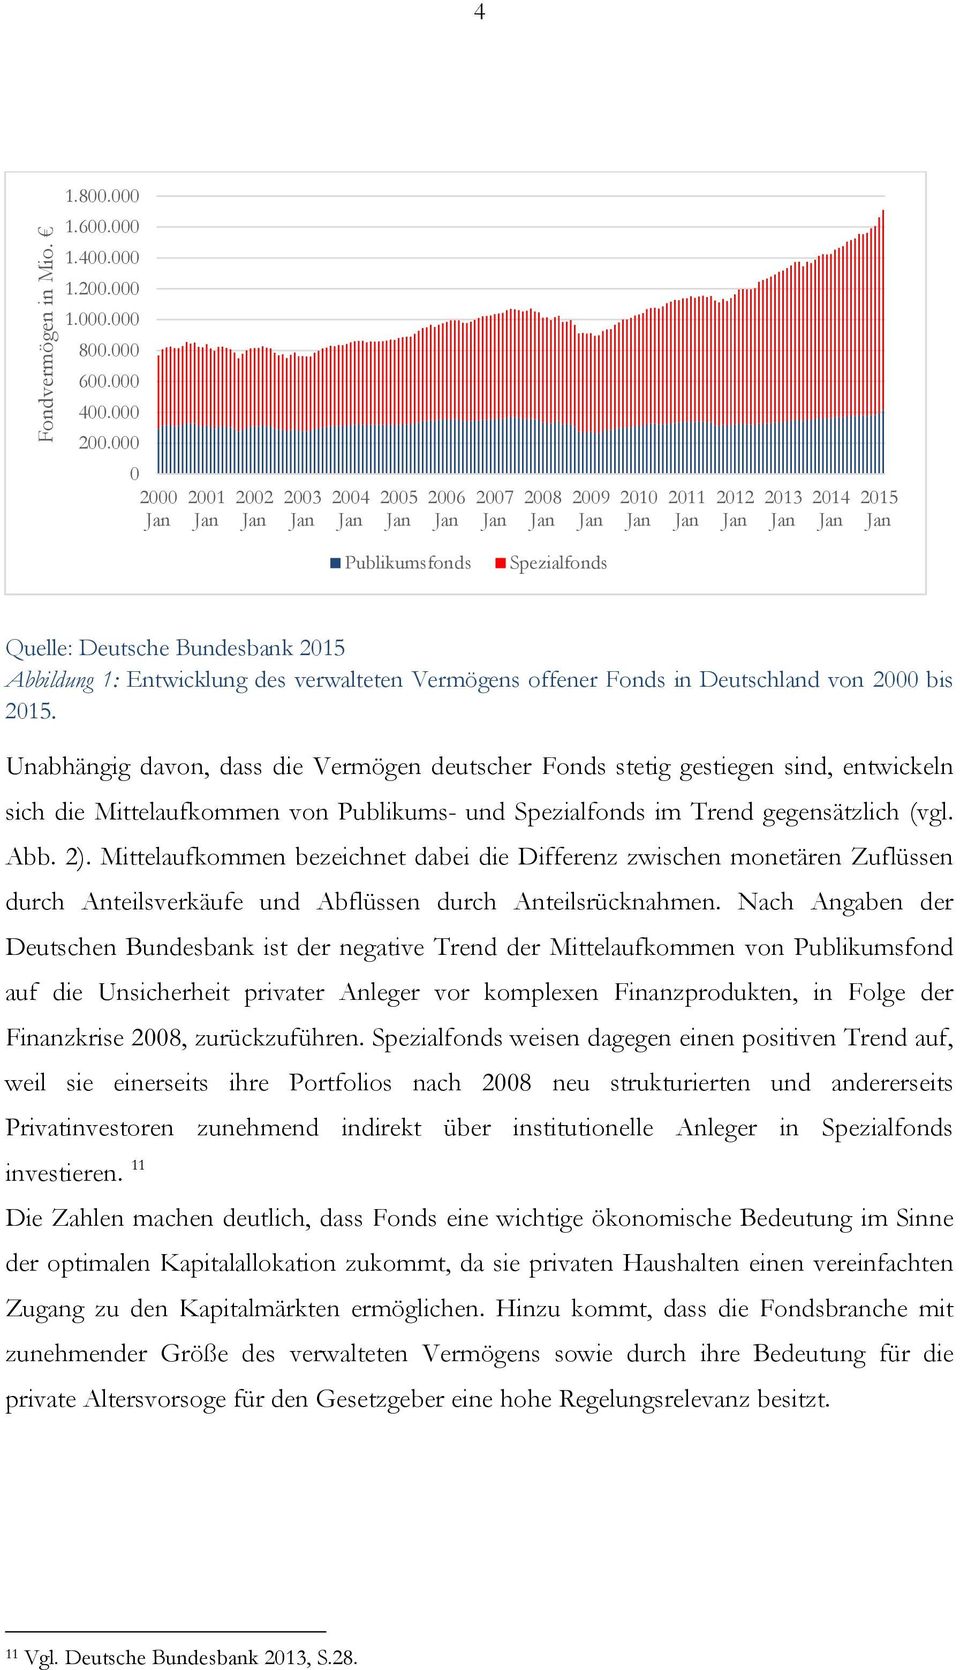 Bundesbank 2015 Abbildung 1: Entwicklung des verwalteten Vermögens offener Fonds in Deutschland von 2000 bis 2015.